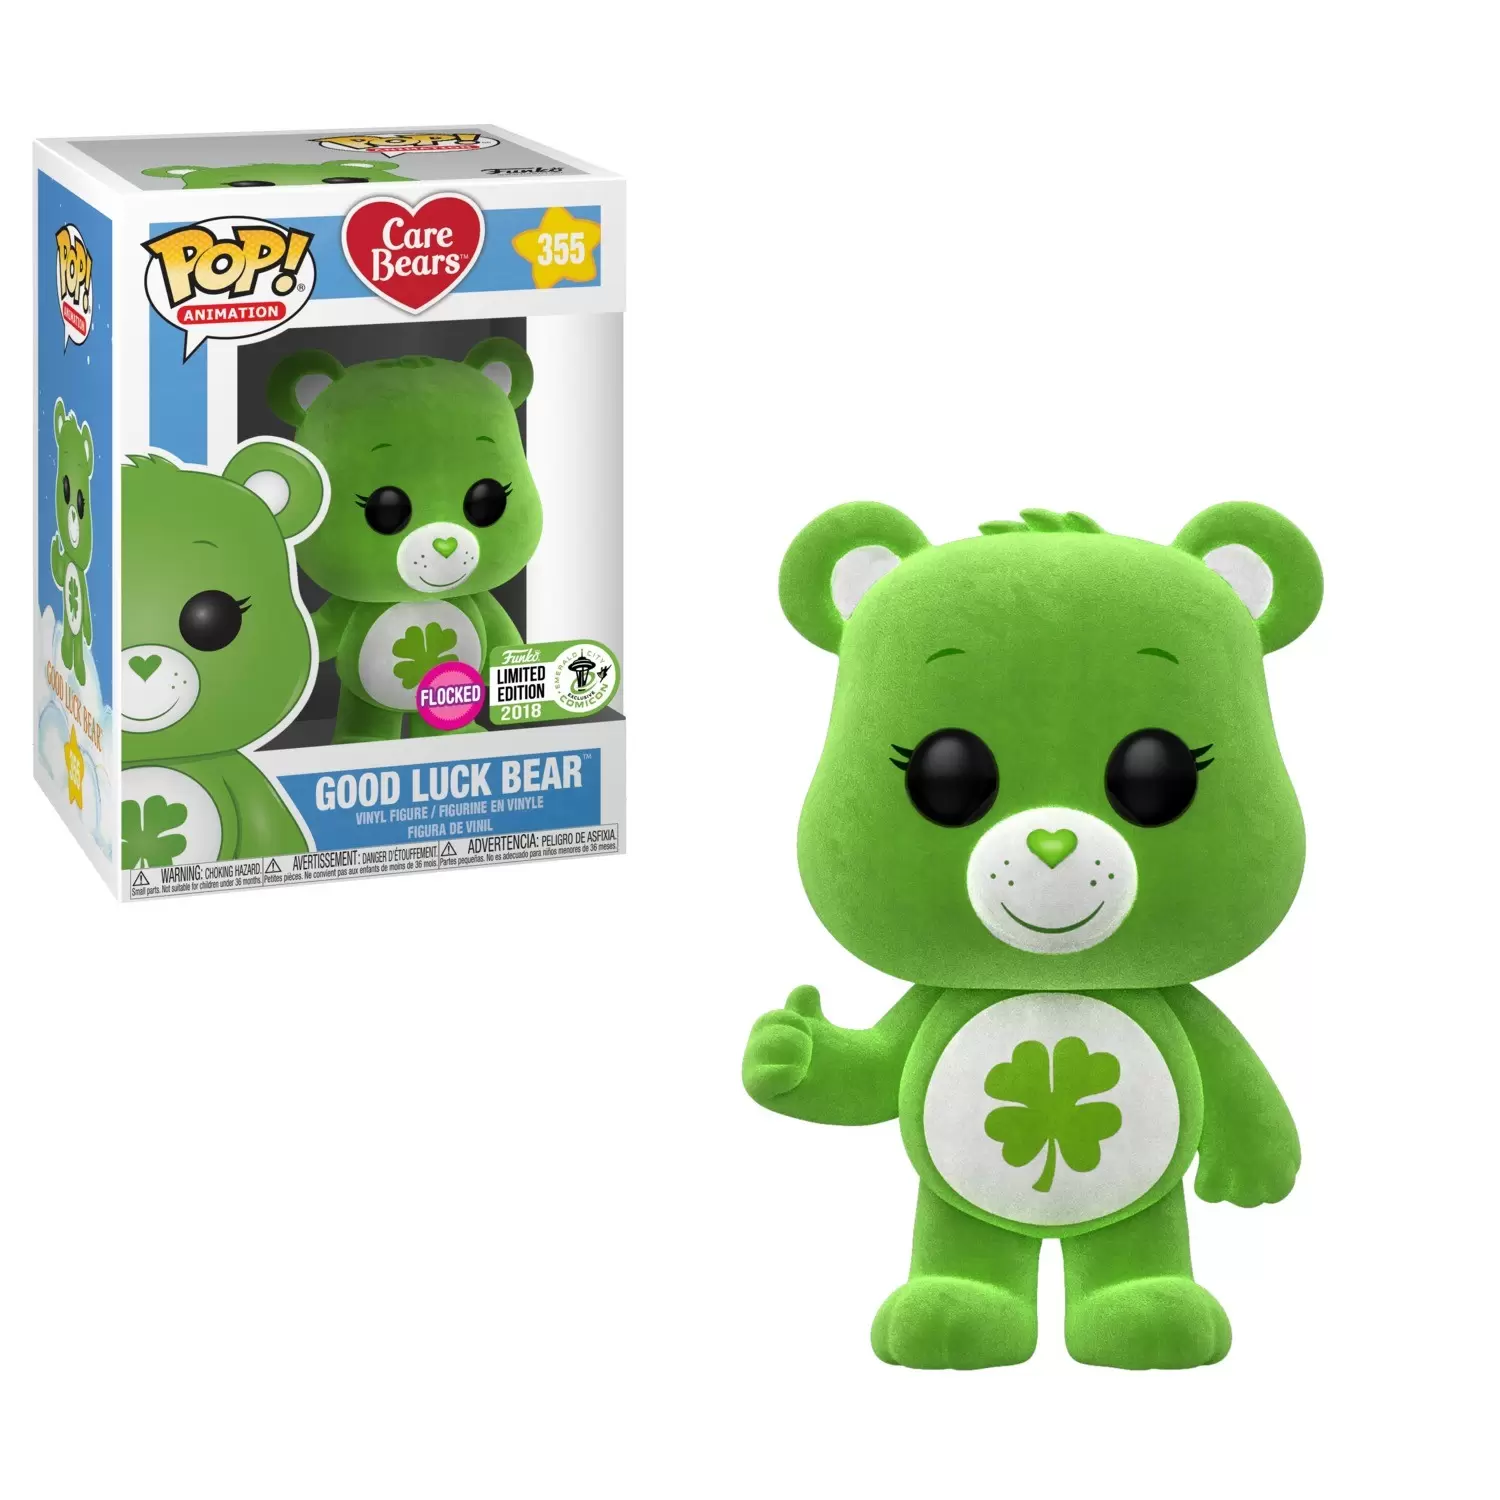 POP! Animation - Care Bears - Good Luck Bear Flocked